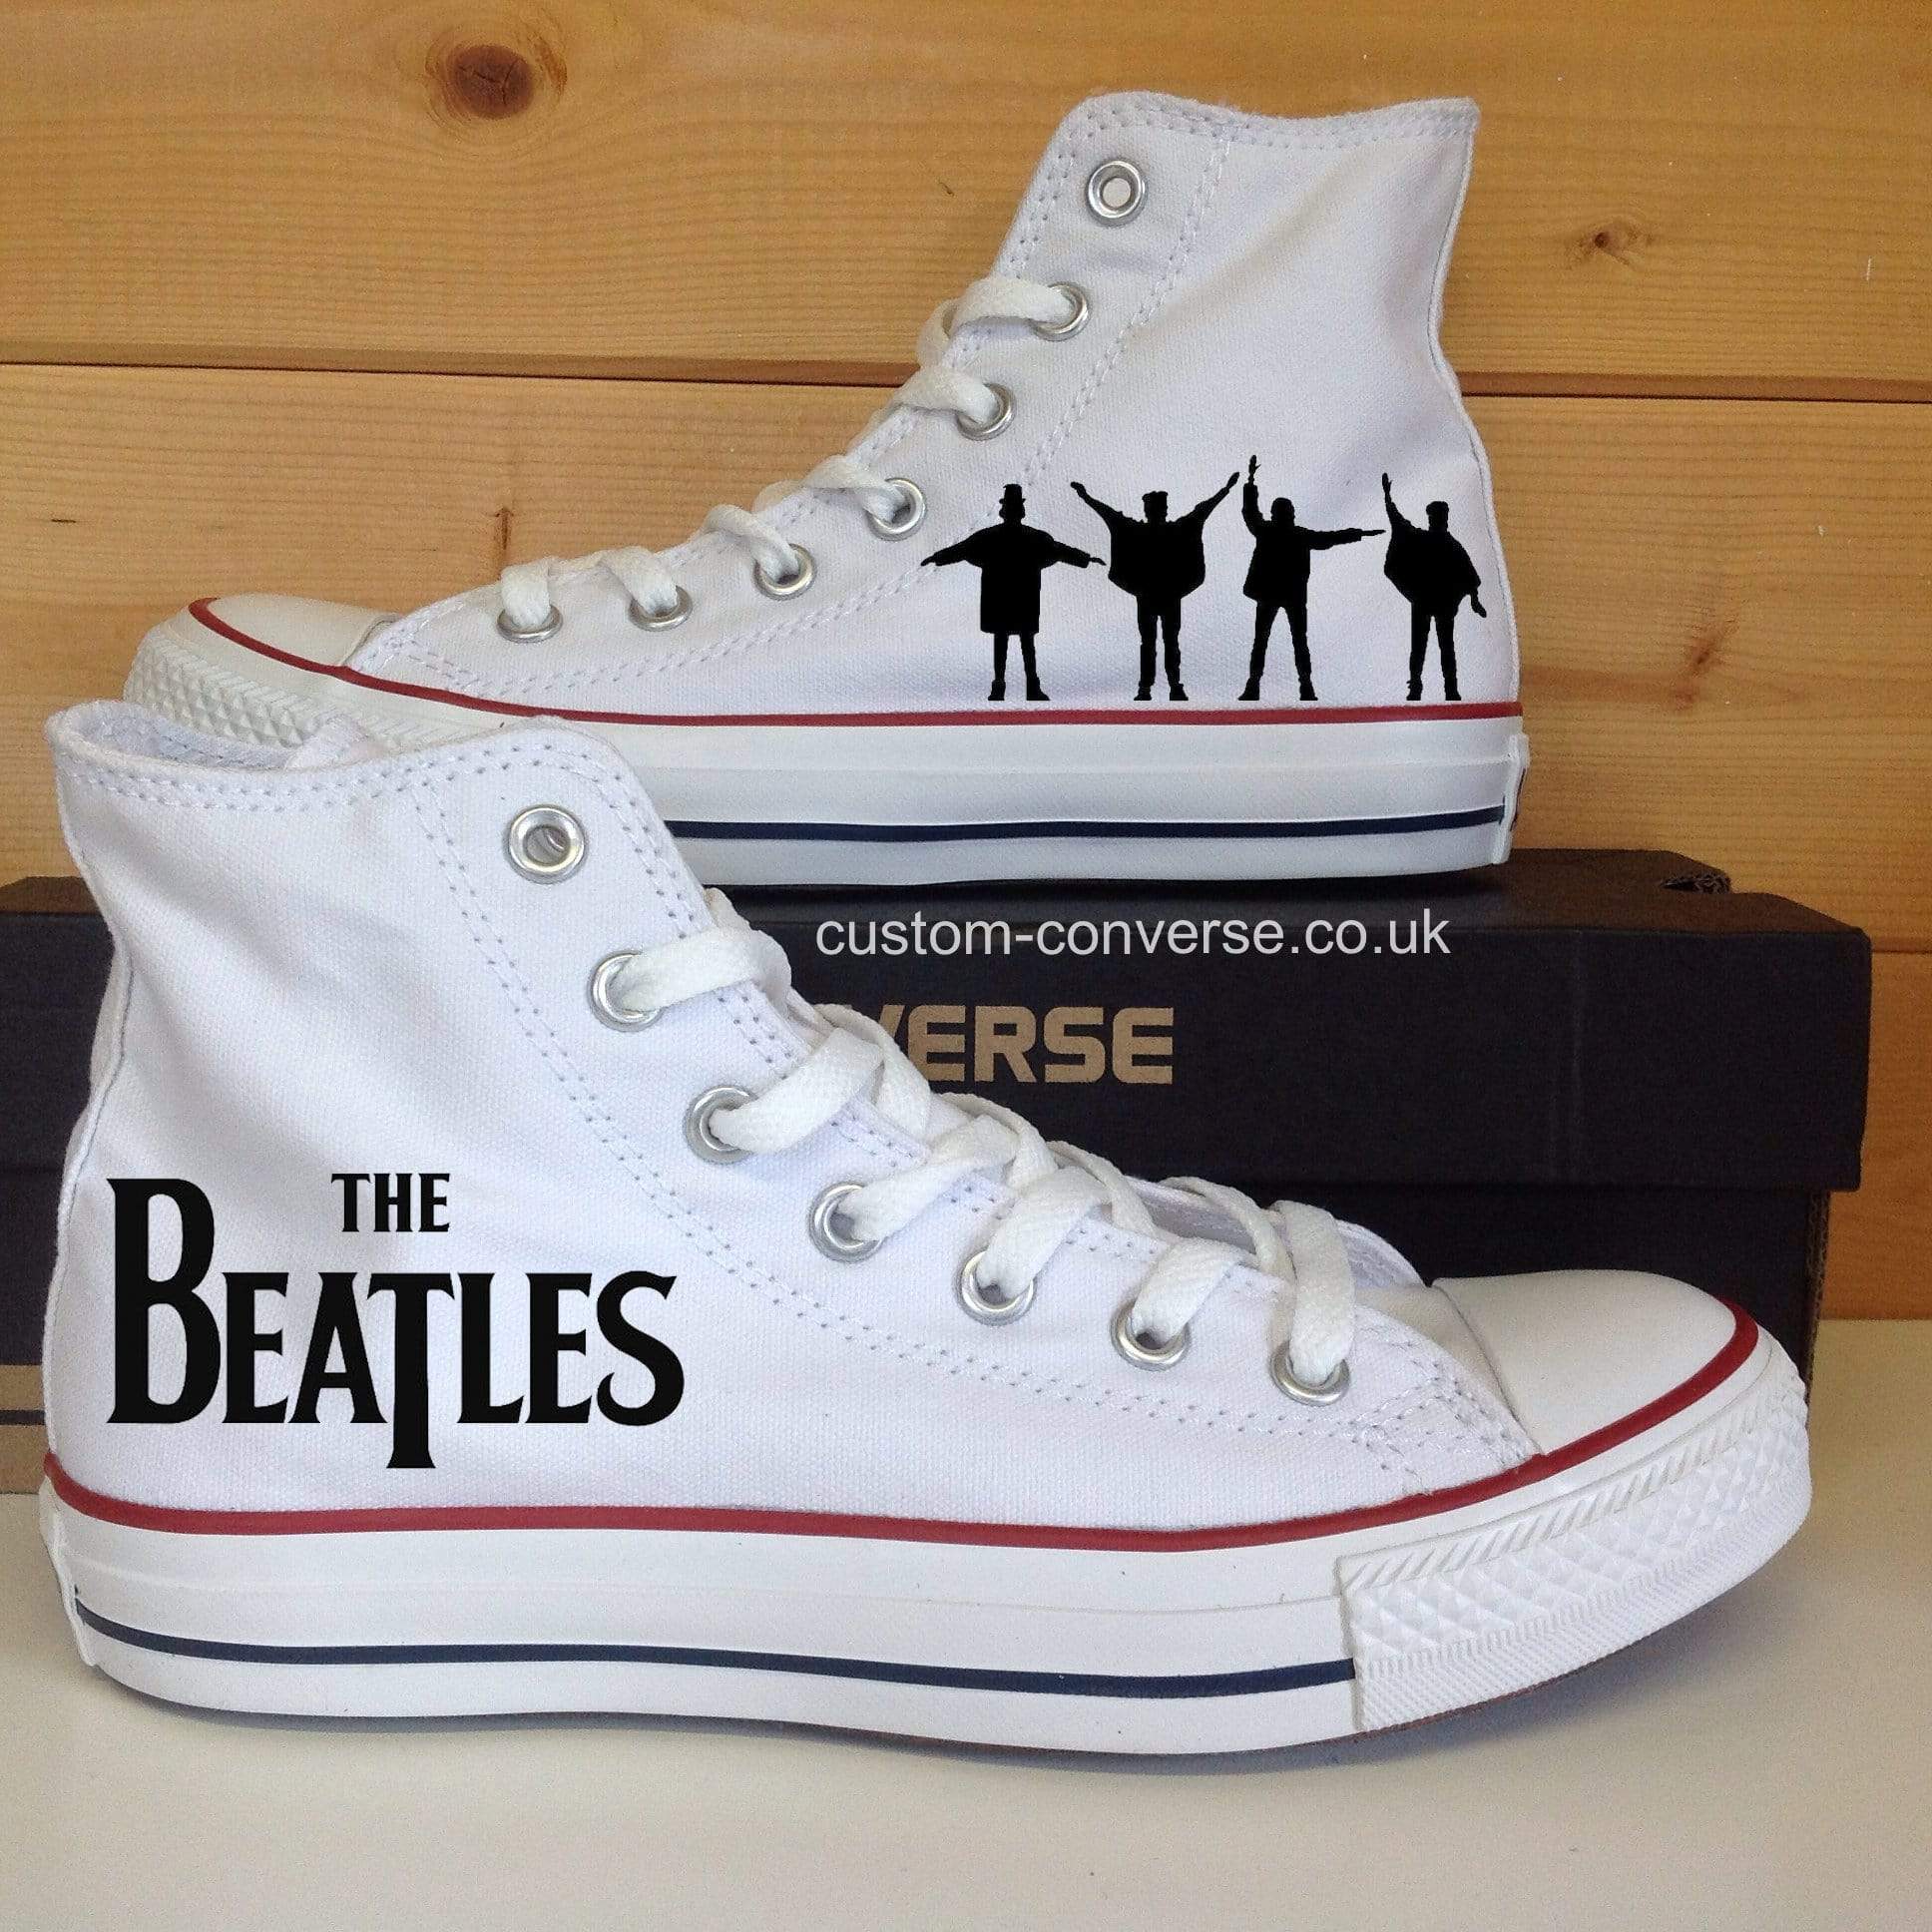 The Beatles| Custom Converse Ltd